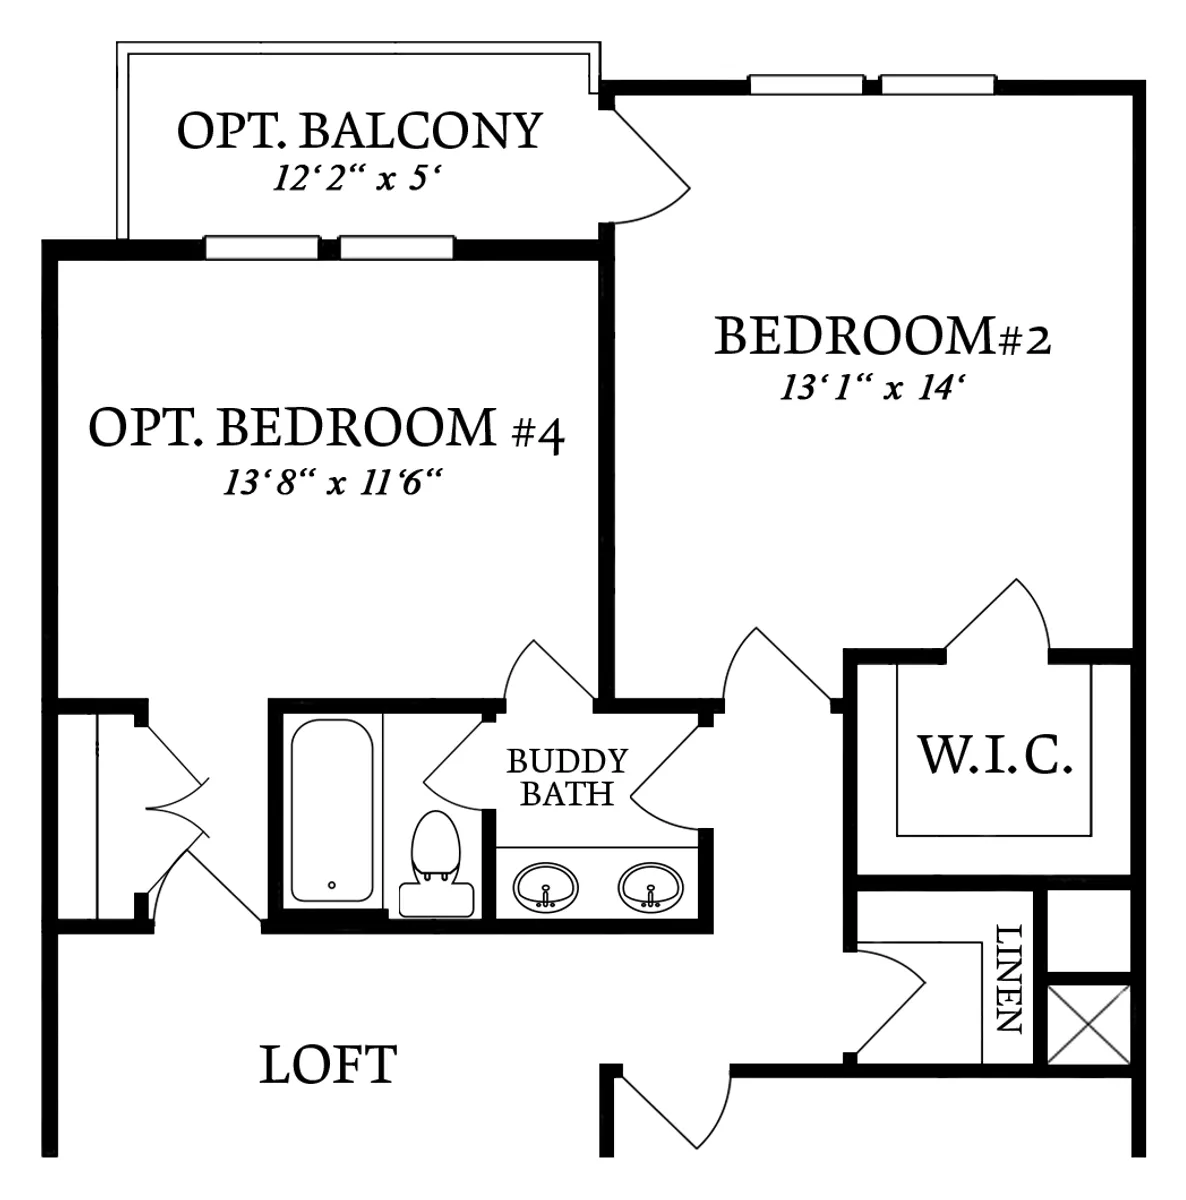 Second Floor Plan | Opt. Bedroom #4